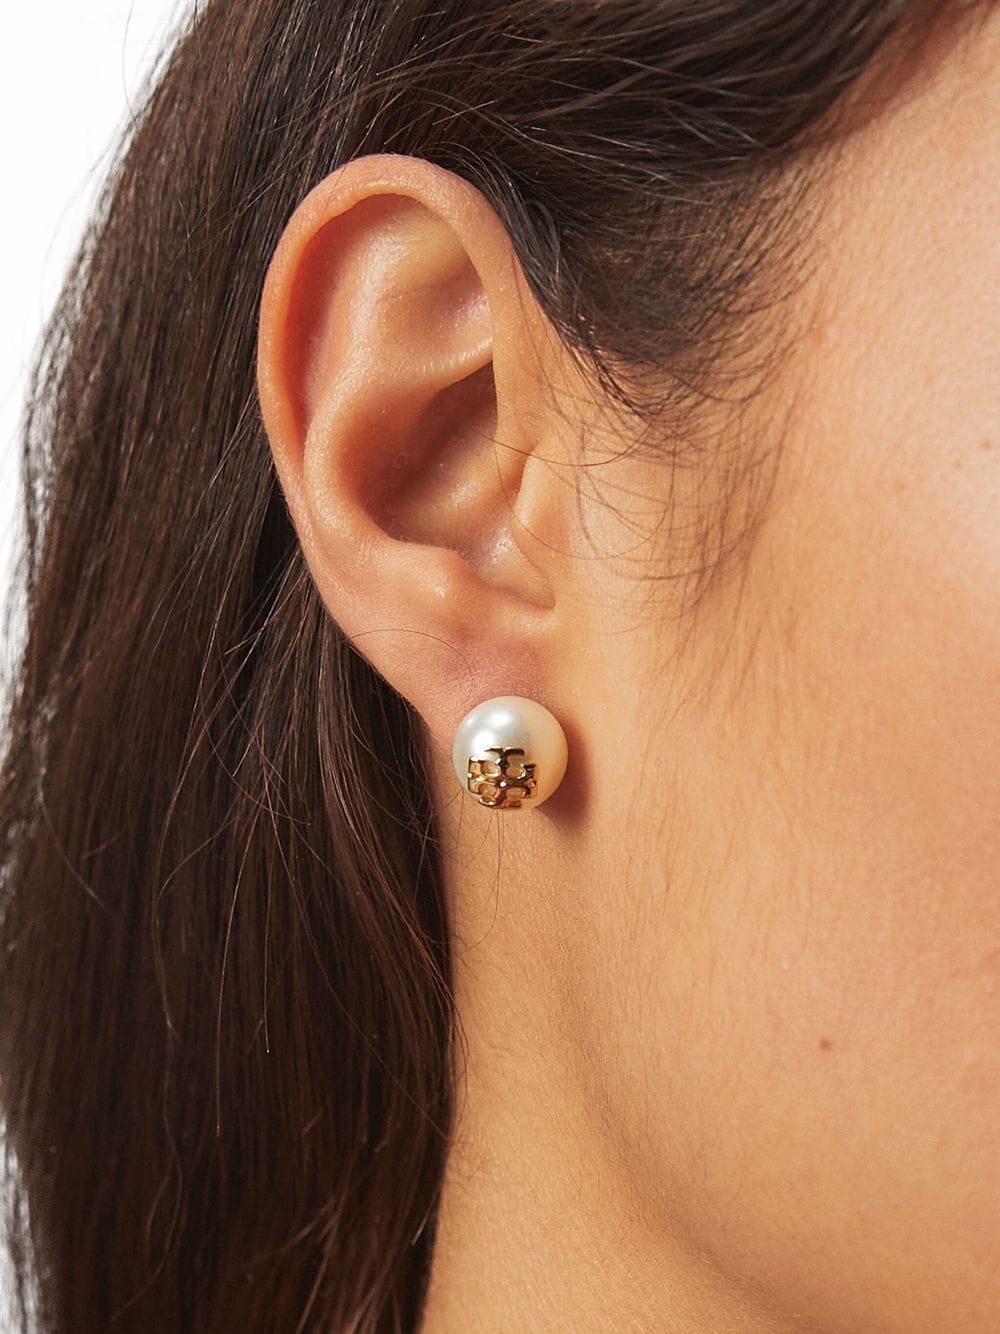 Kira pearl stud earrings<BR/><BR/><BR/>